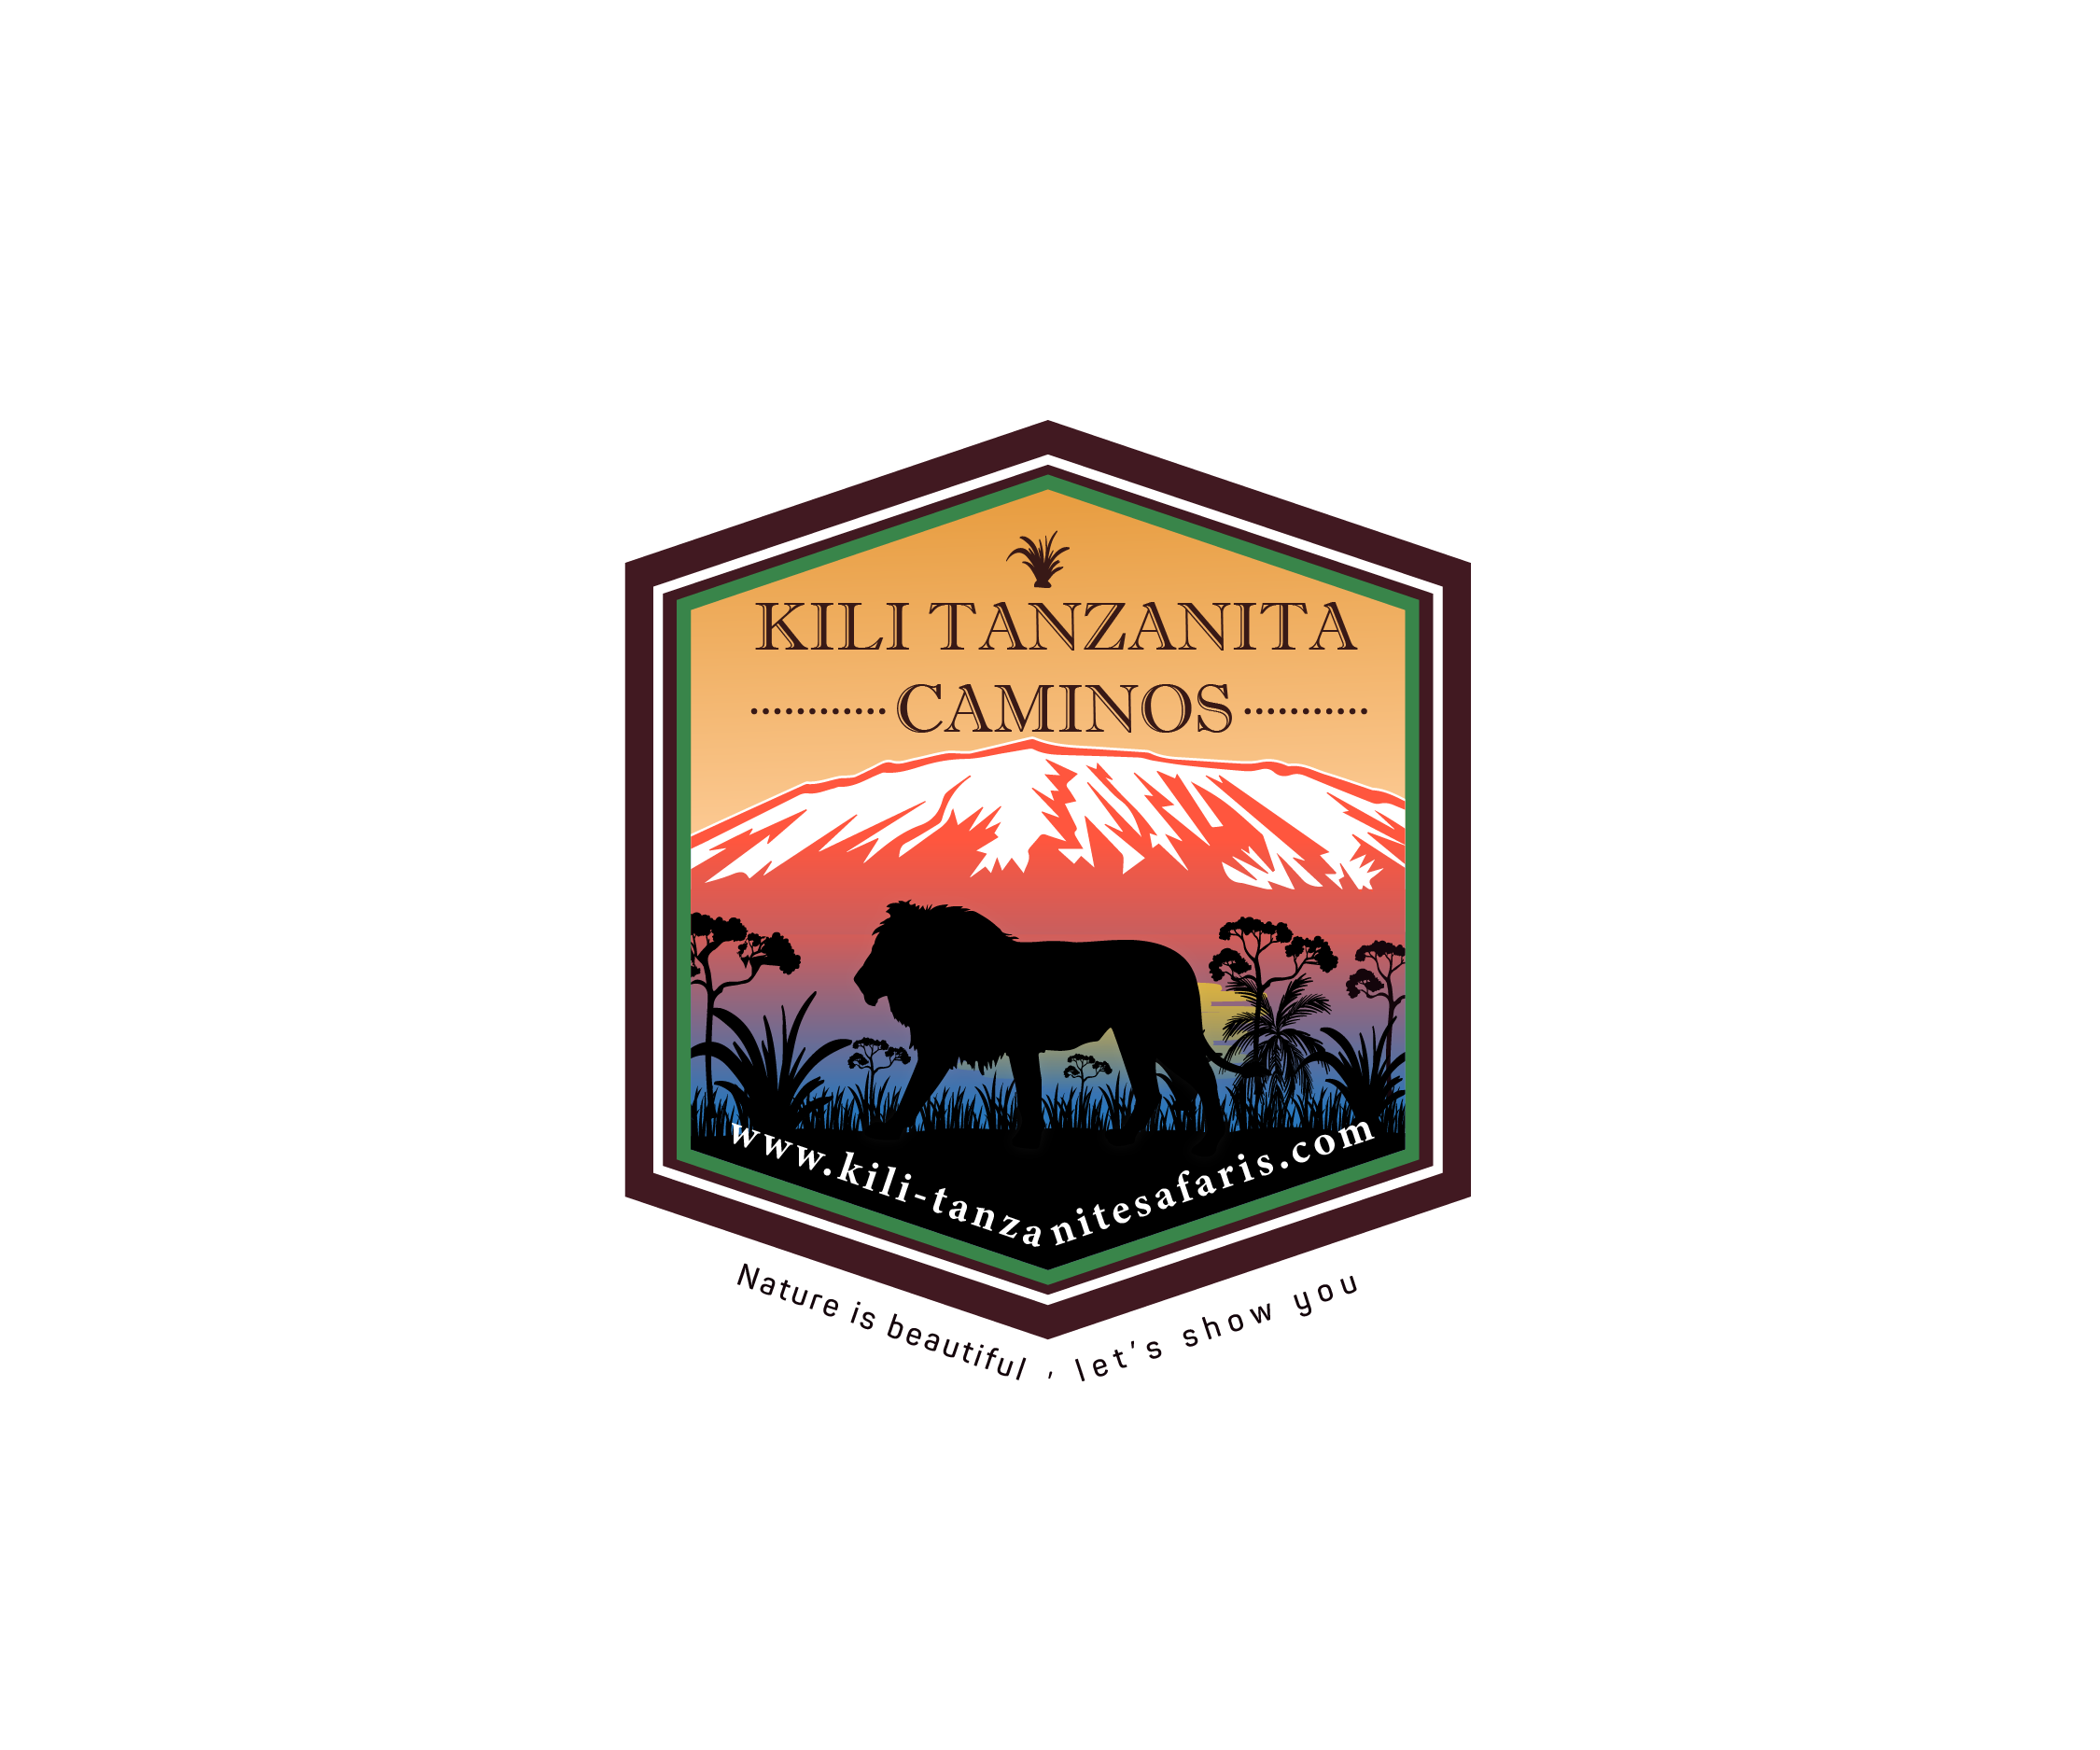 Biking tours Kilimanjaro climbing, safaris